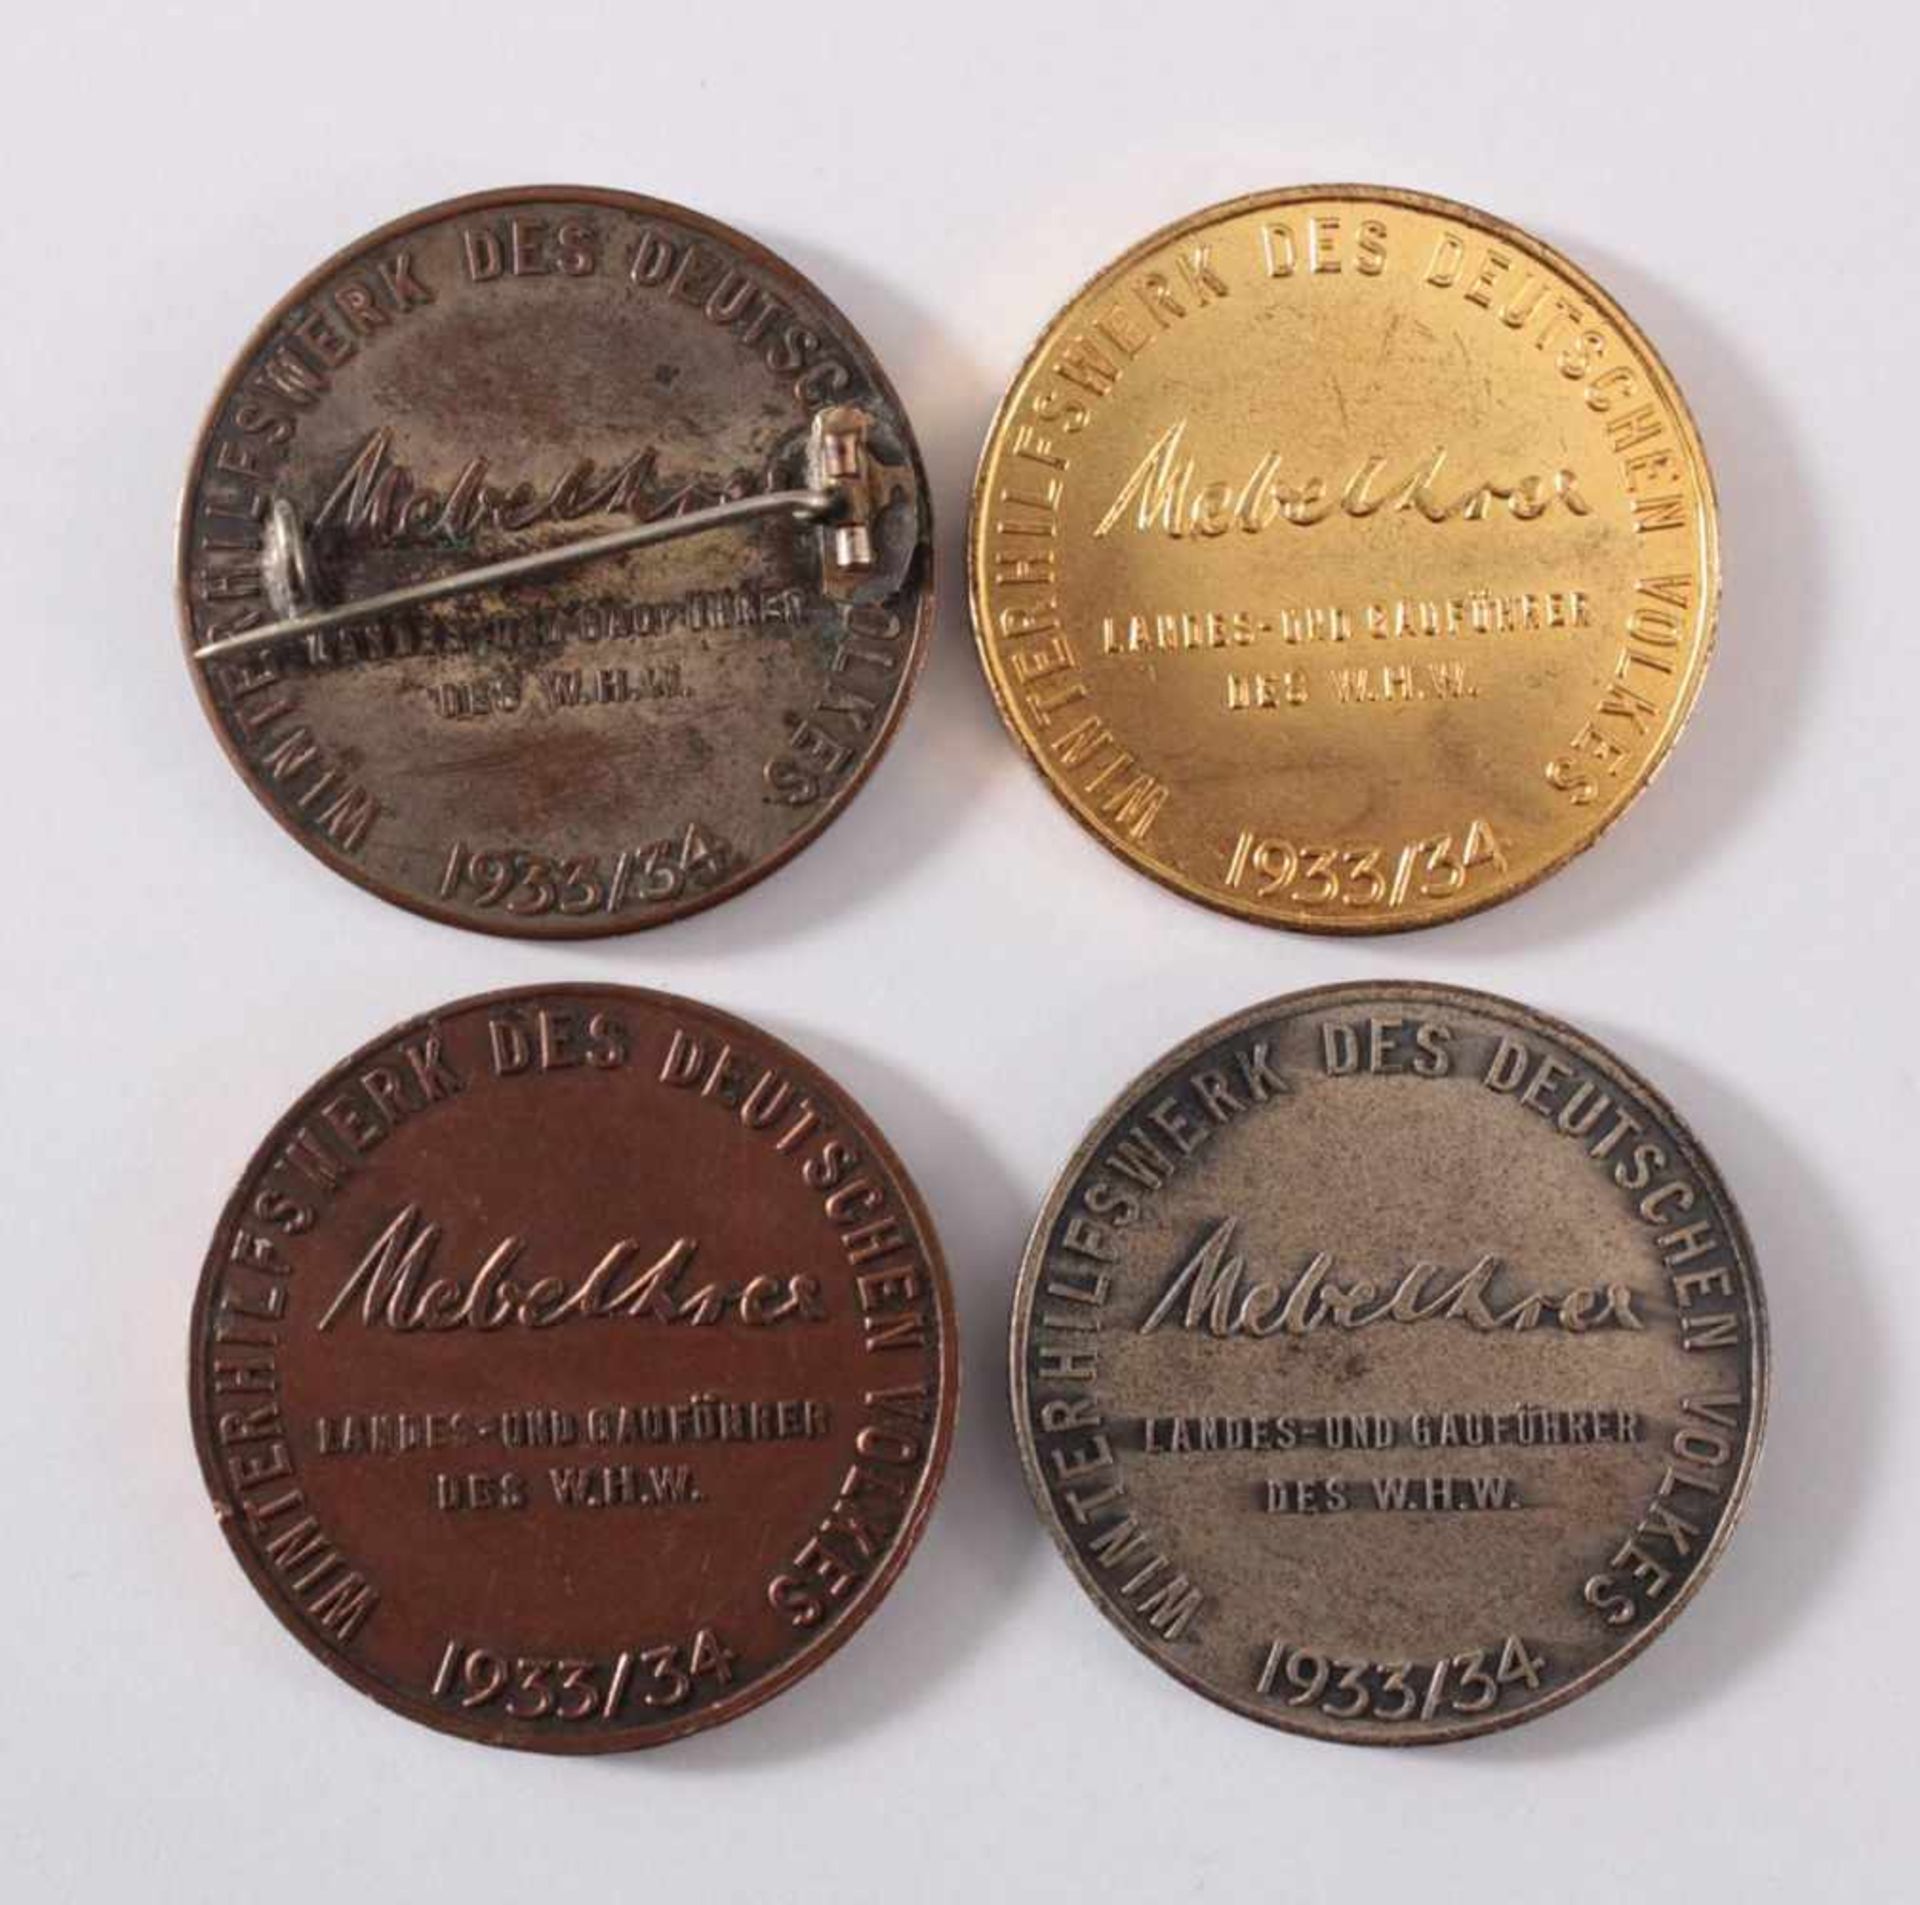 4 Medaillen Hitlers Dank - Gau Halle-MeerseburgBuntmetall, 1x silbern, 2x kupfern, 1x goldfarben. - Image 2 of 2